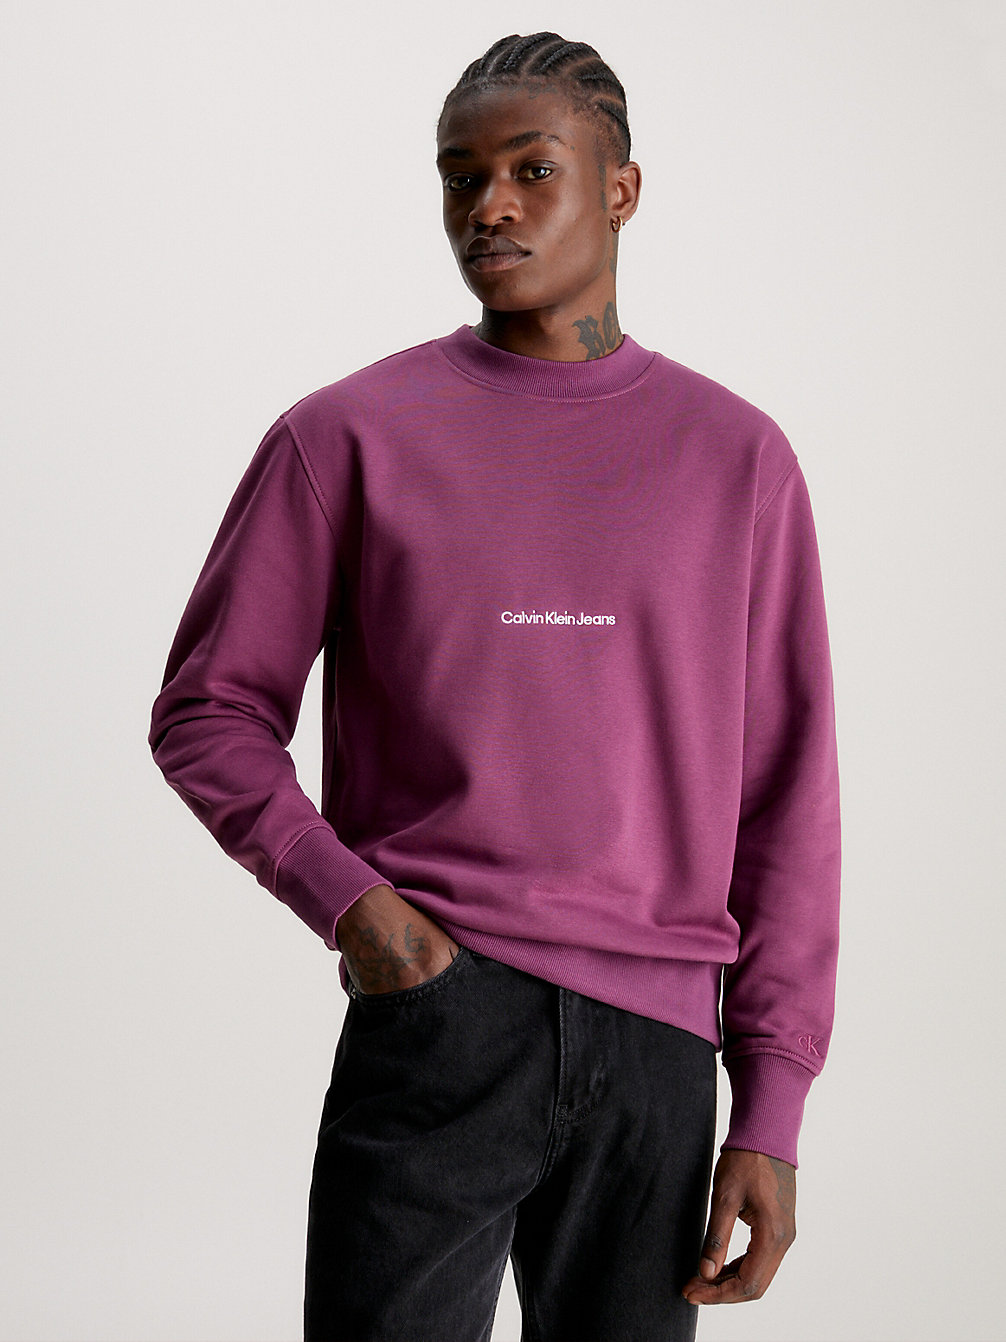 AMARANTH > Luźna Bluza Z Logo > undefined Mężczyźni - Calvin Klein